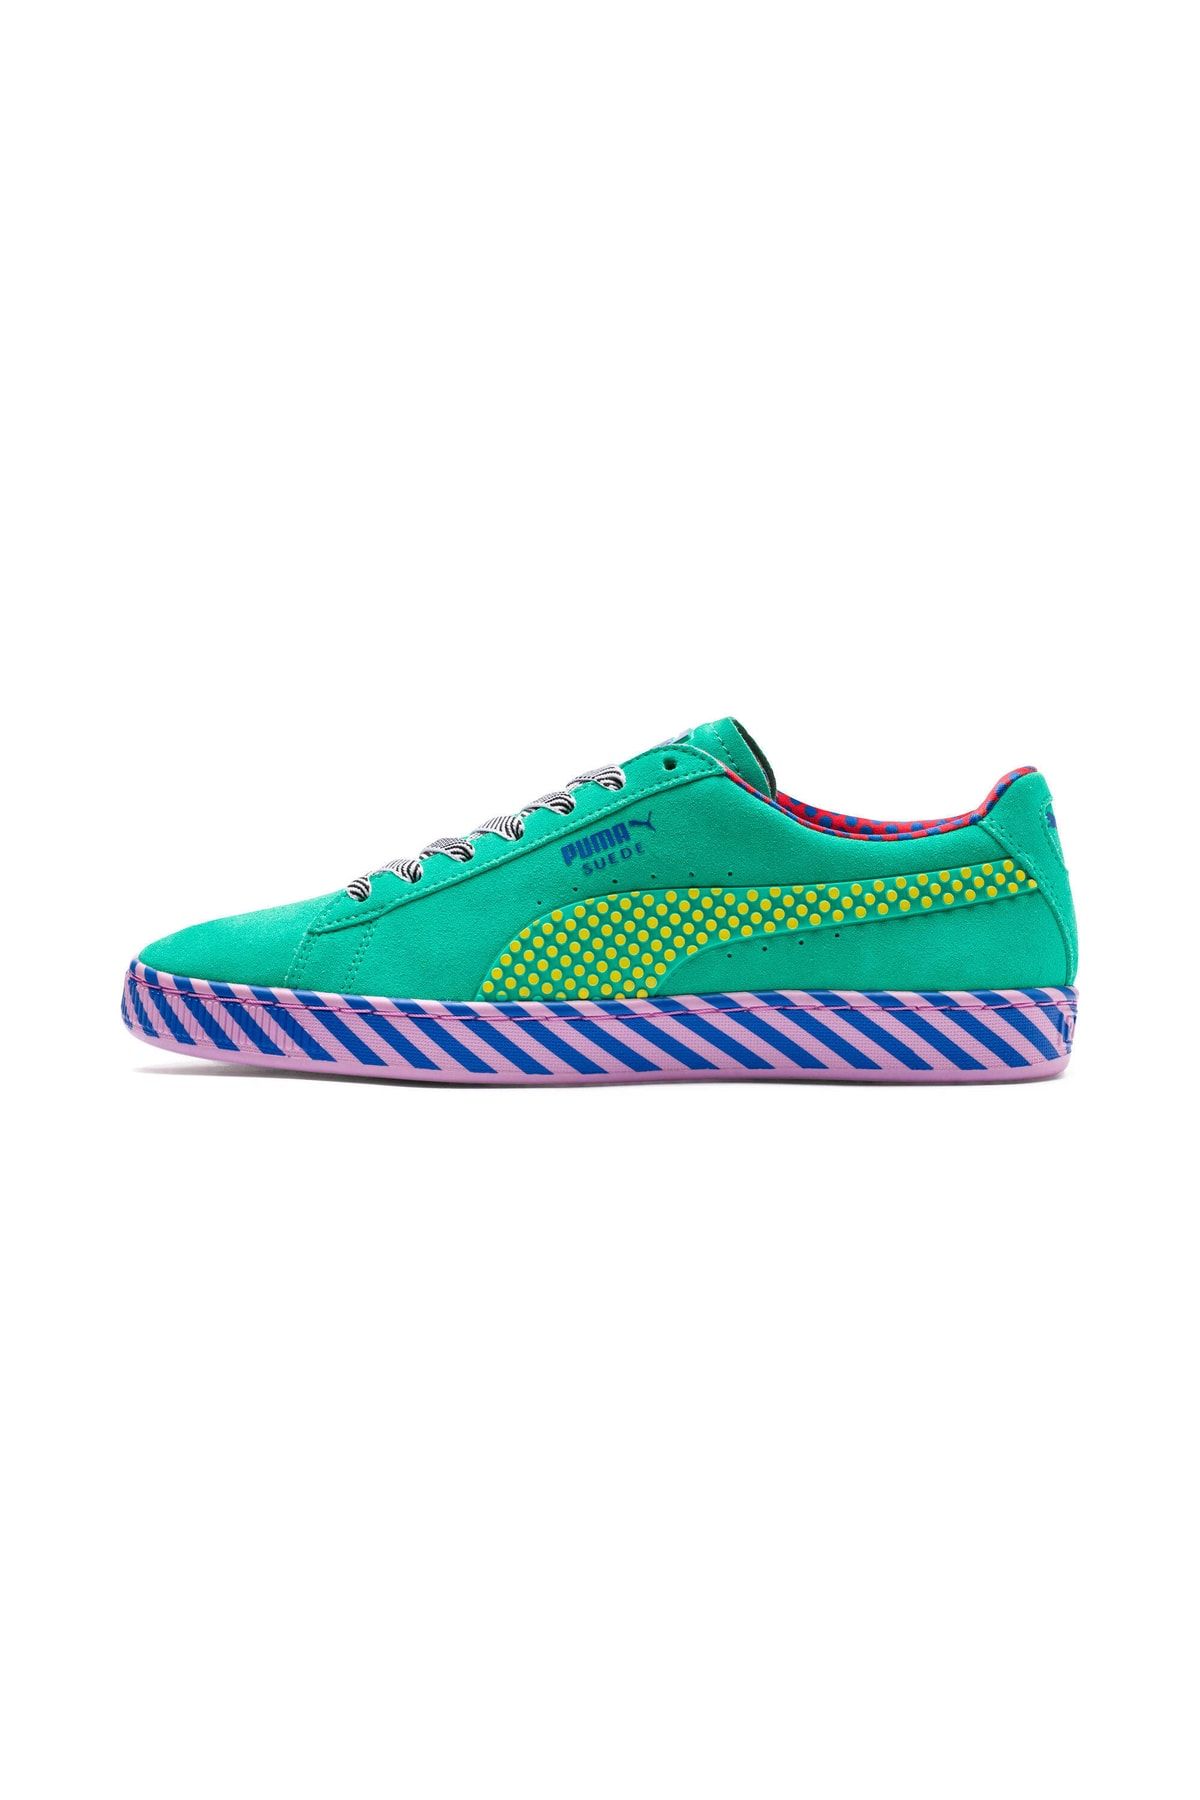 Puma SUEDE CLASSIC POP CULTURE Çok Renkli Unisex Sneaker Ayakkabı 100429222